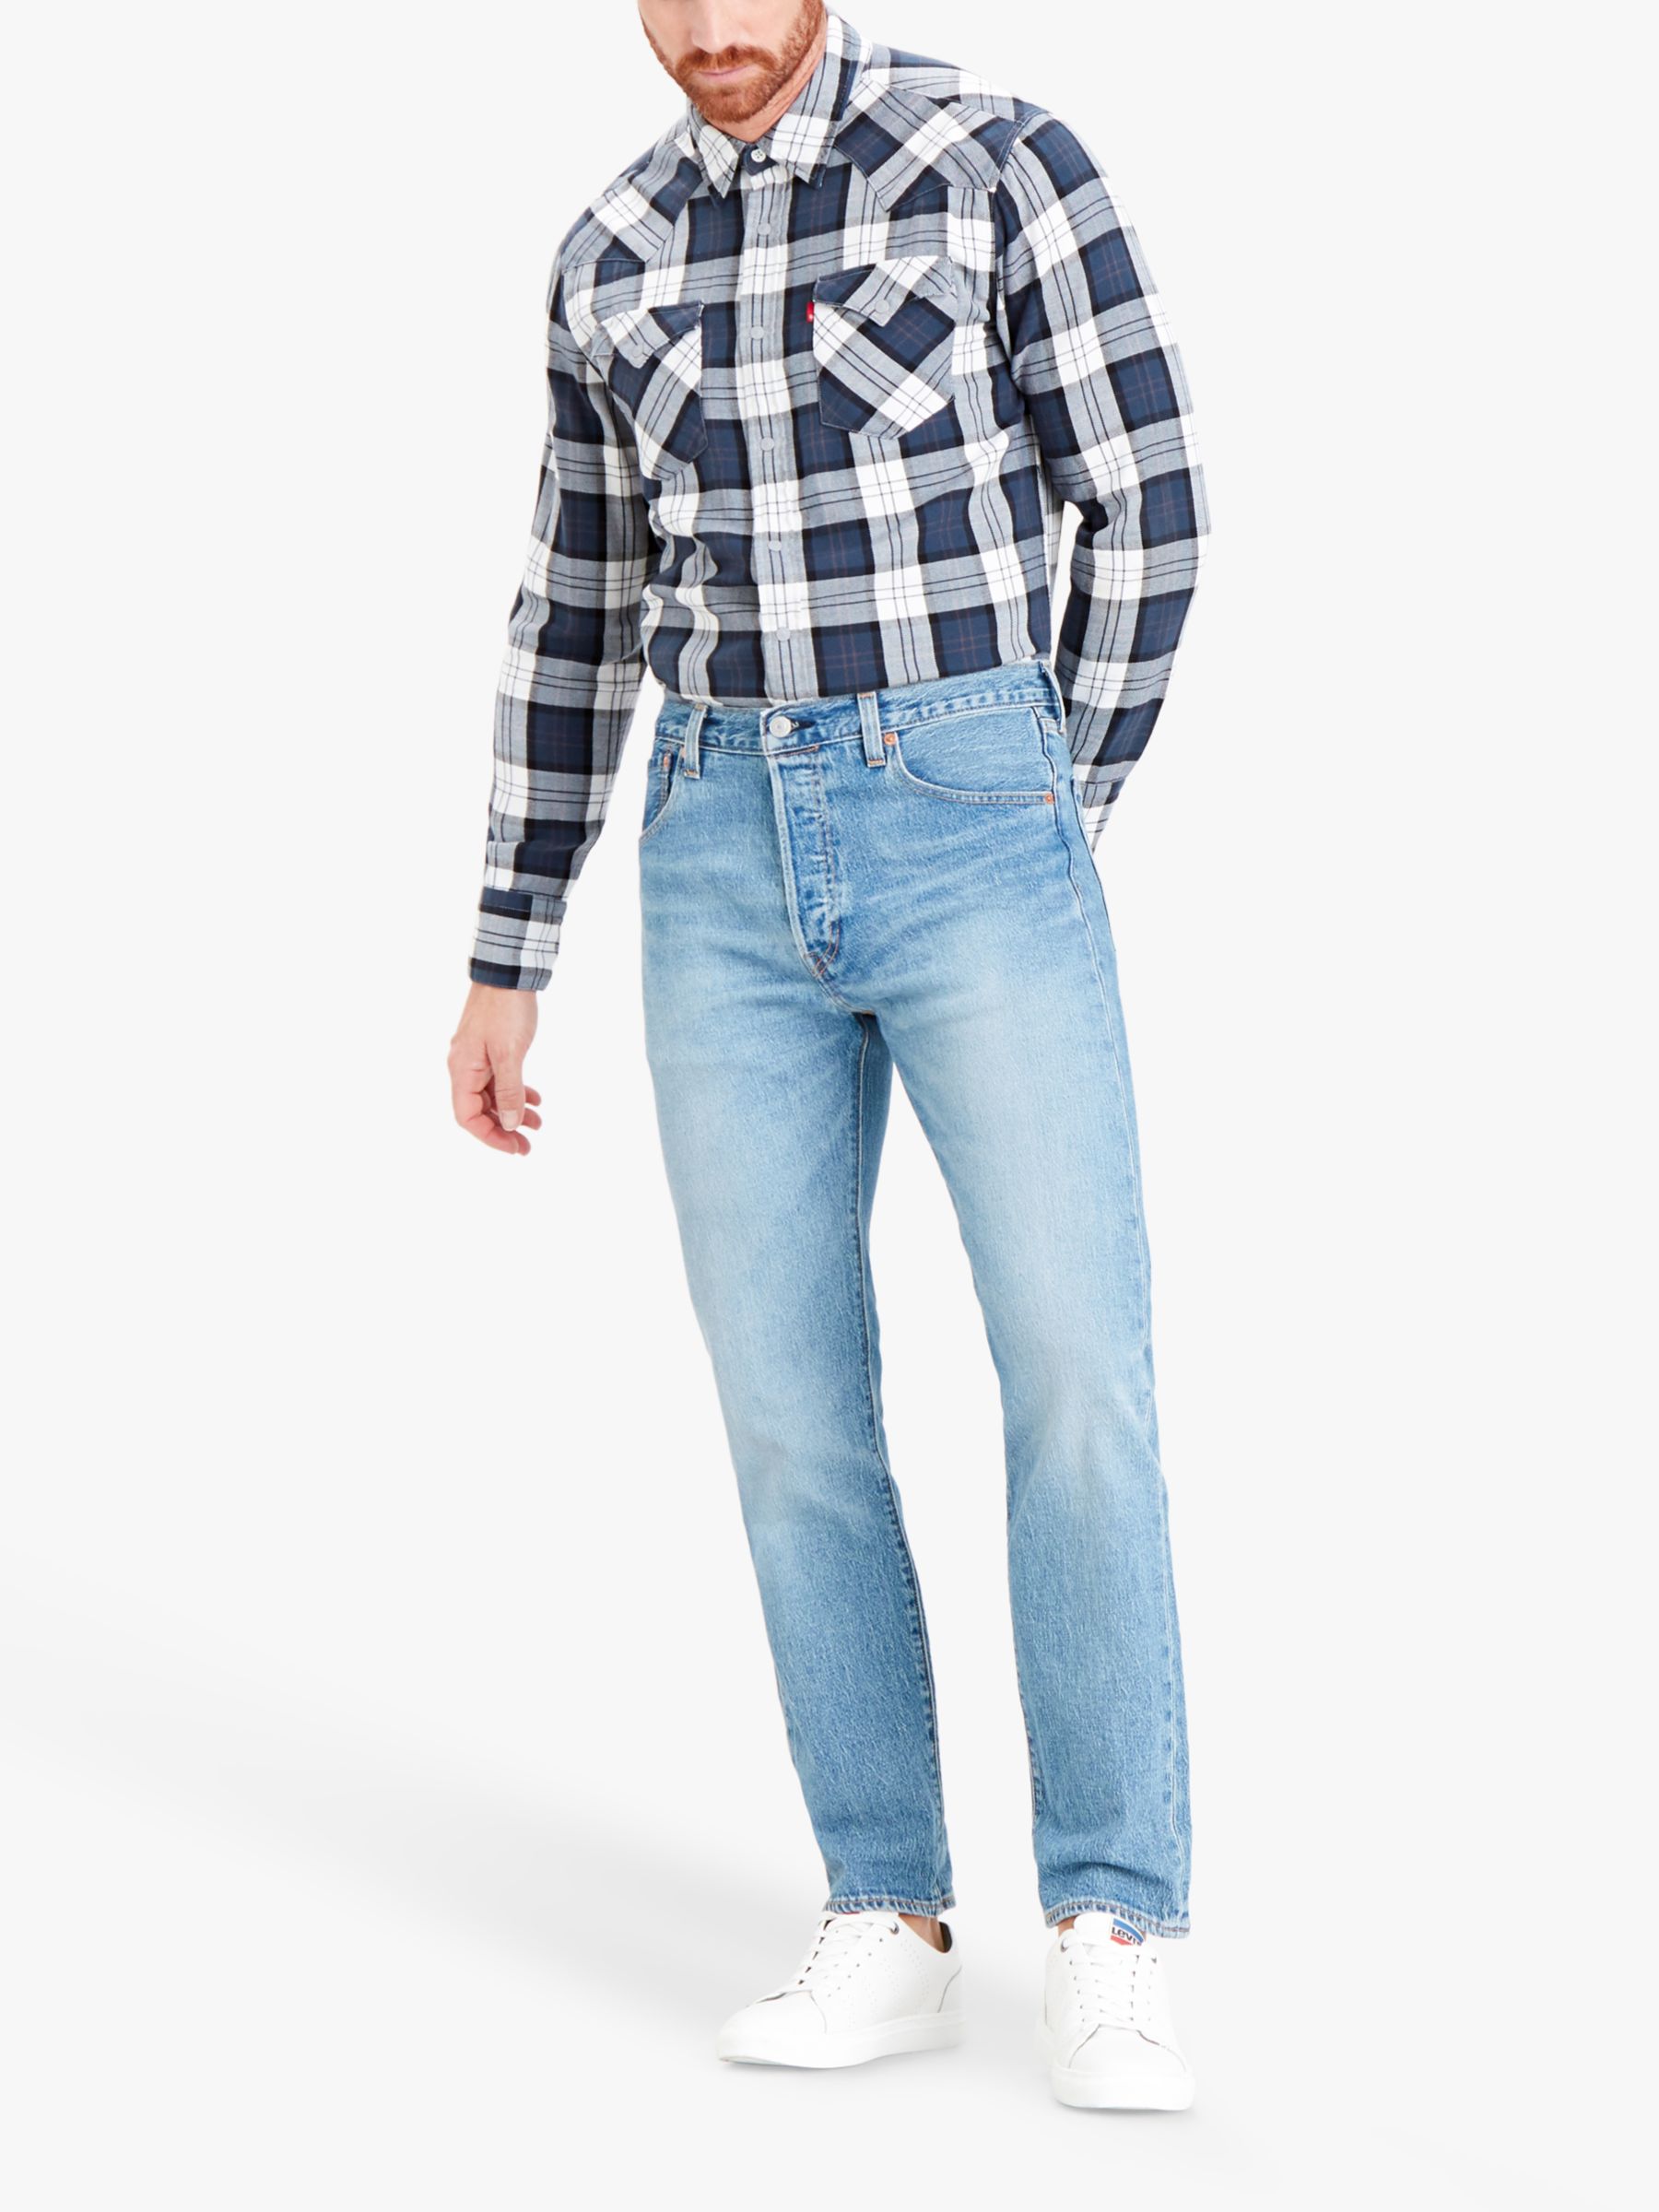 Dolke margen Bunke af Levi's 501 Original Straight Fit Jeans, Light Blue, 32R